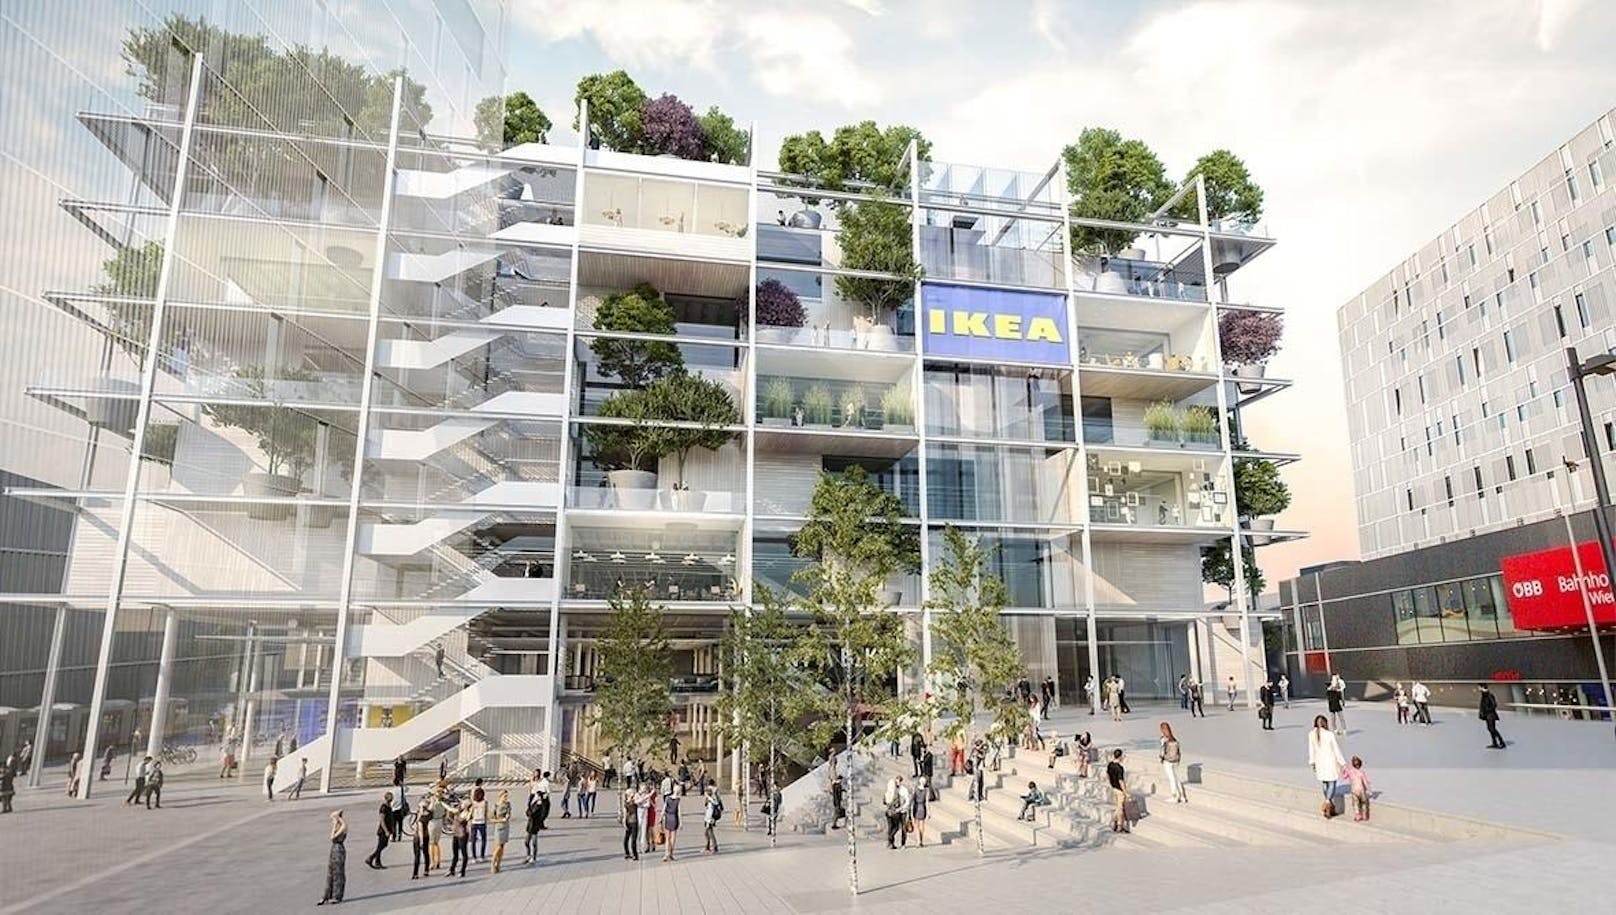 Der neue Innenstadt-Ikea soll ein bahnbrechendes Konzept umsetzen. Erstmals sollen alle Artikel auch mitten in der City angeboten werden können. Selbstbedienungshalle gibt es aber keine, alles wird geliefert. Geplante Eröffnung: 2021.